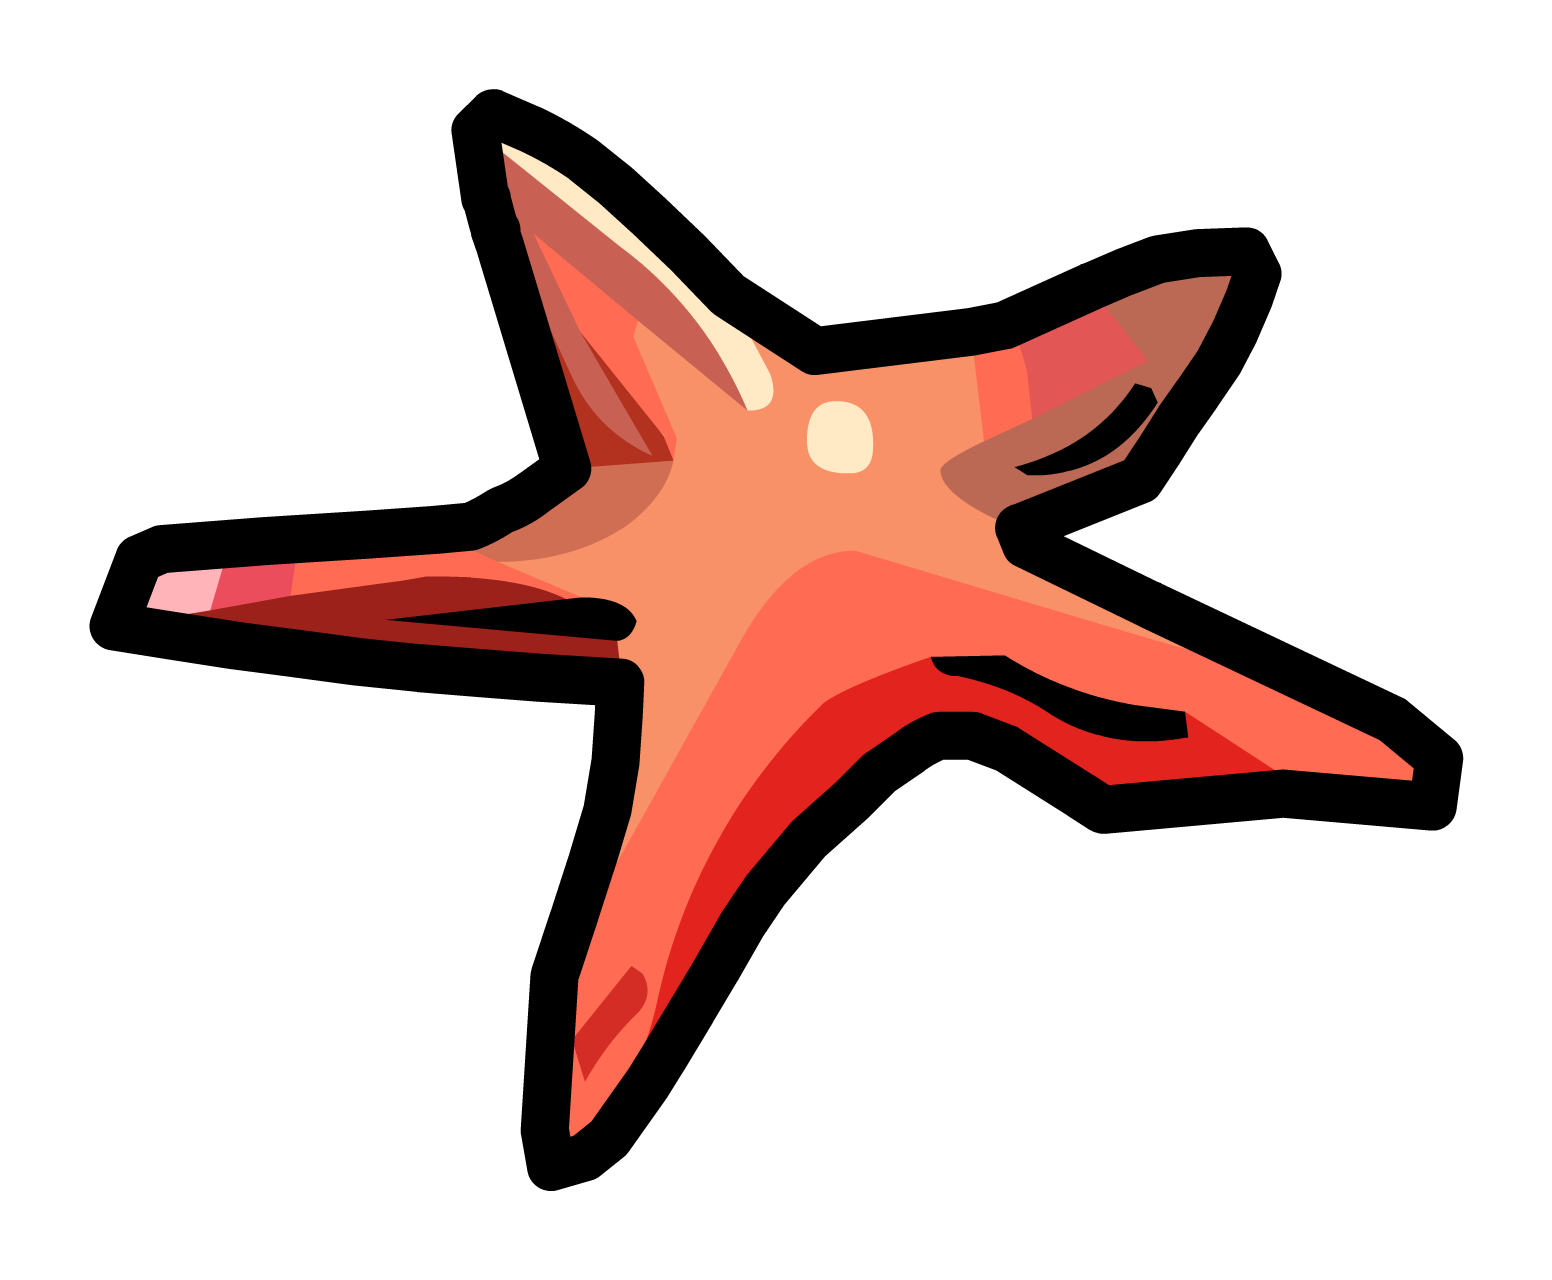 Starfish - Club Penguin Starfish Pin (1552x1280)